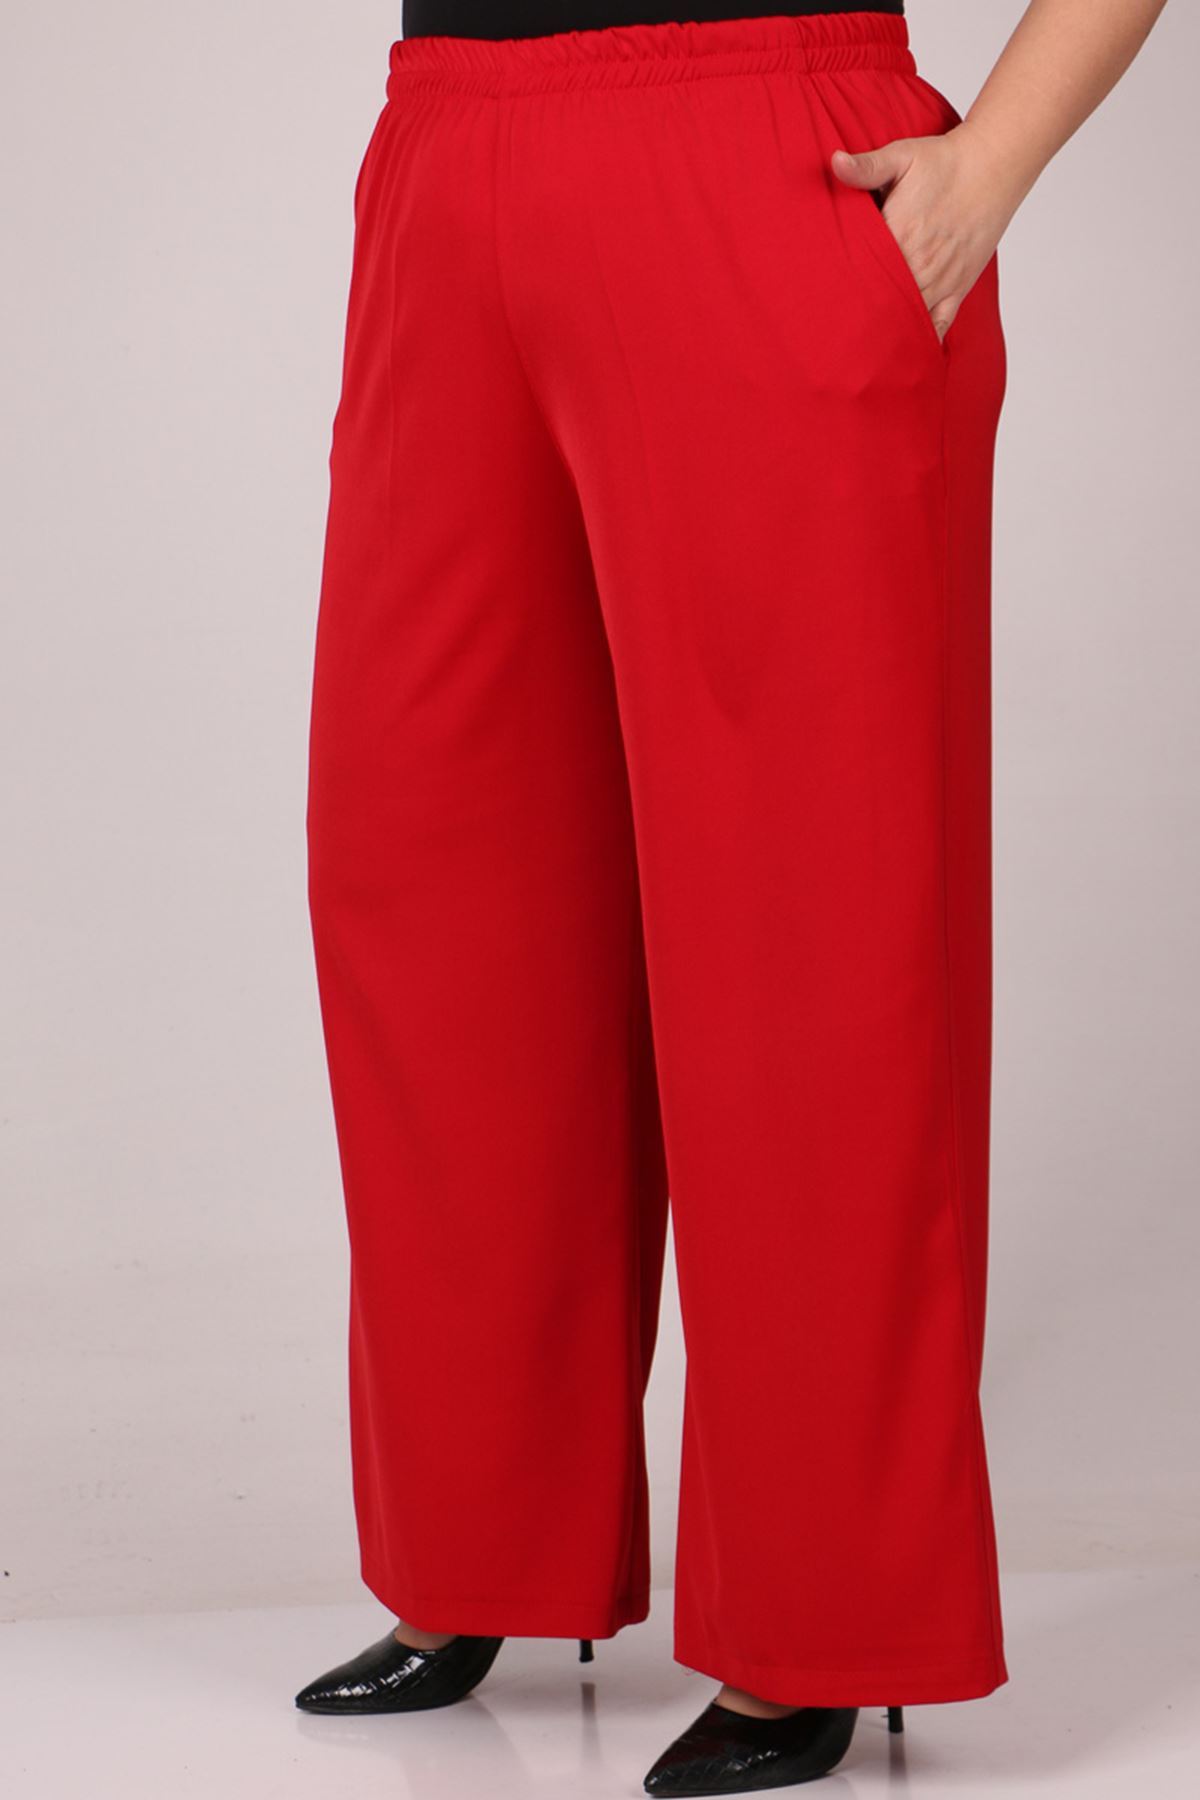 29019 Büyük Beden Beli Lastikli En Boy Likra Pantolon - Kırmızı